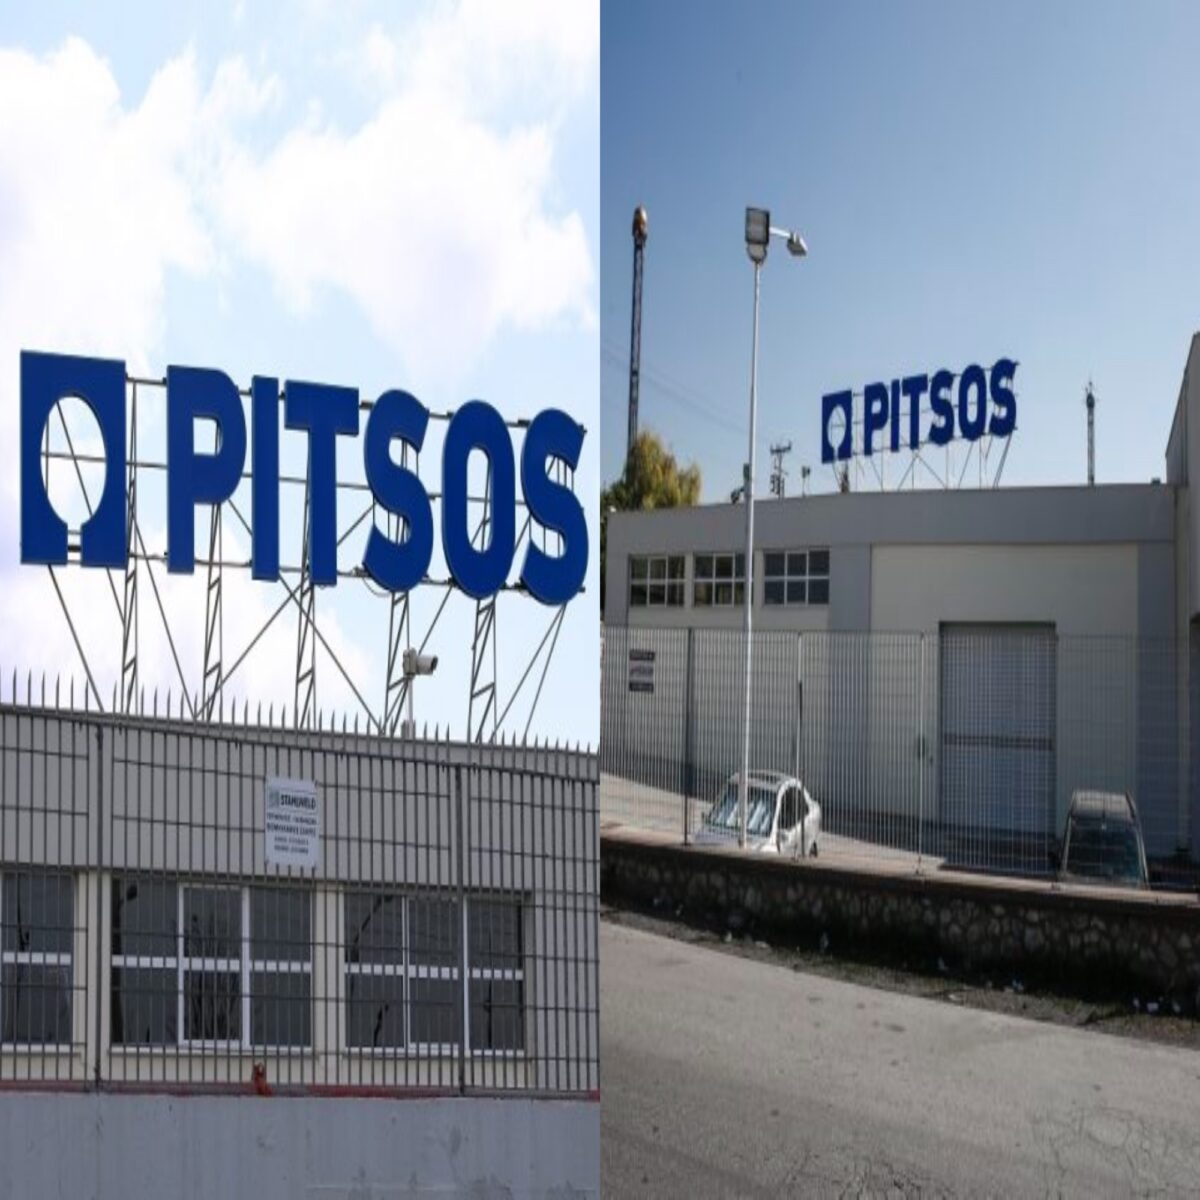 Επιτέλους ελληνική παραγωγή συσκευών: Η Pyramis συνεχίζει την Πίτσος